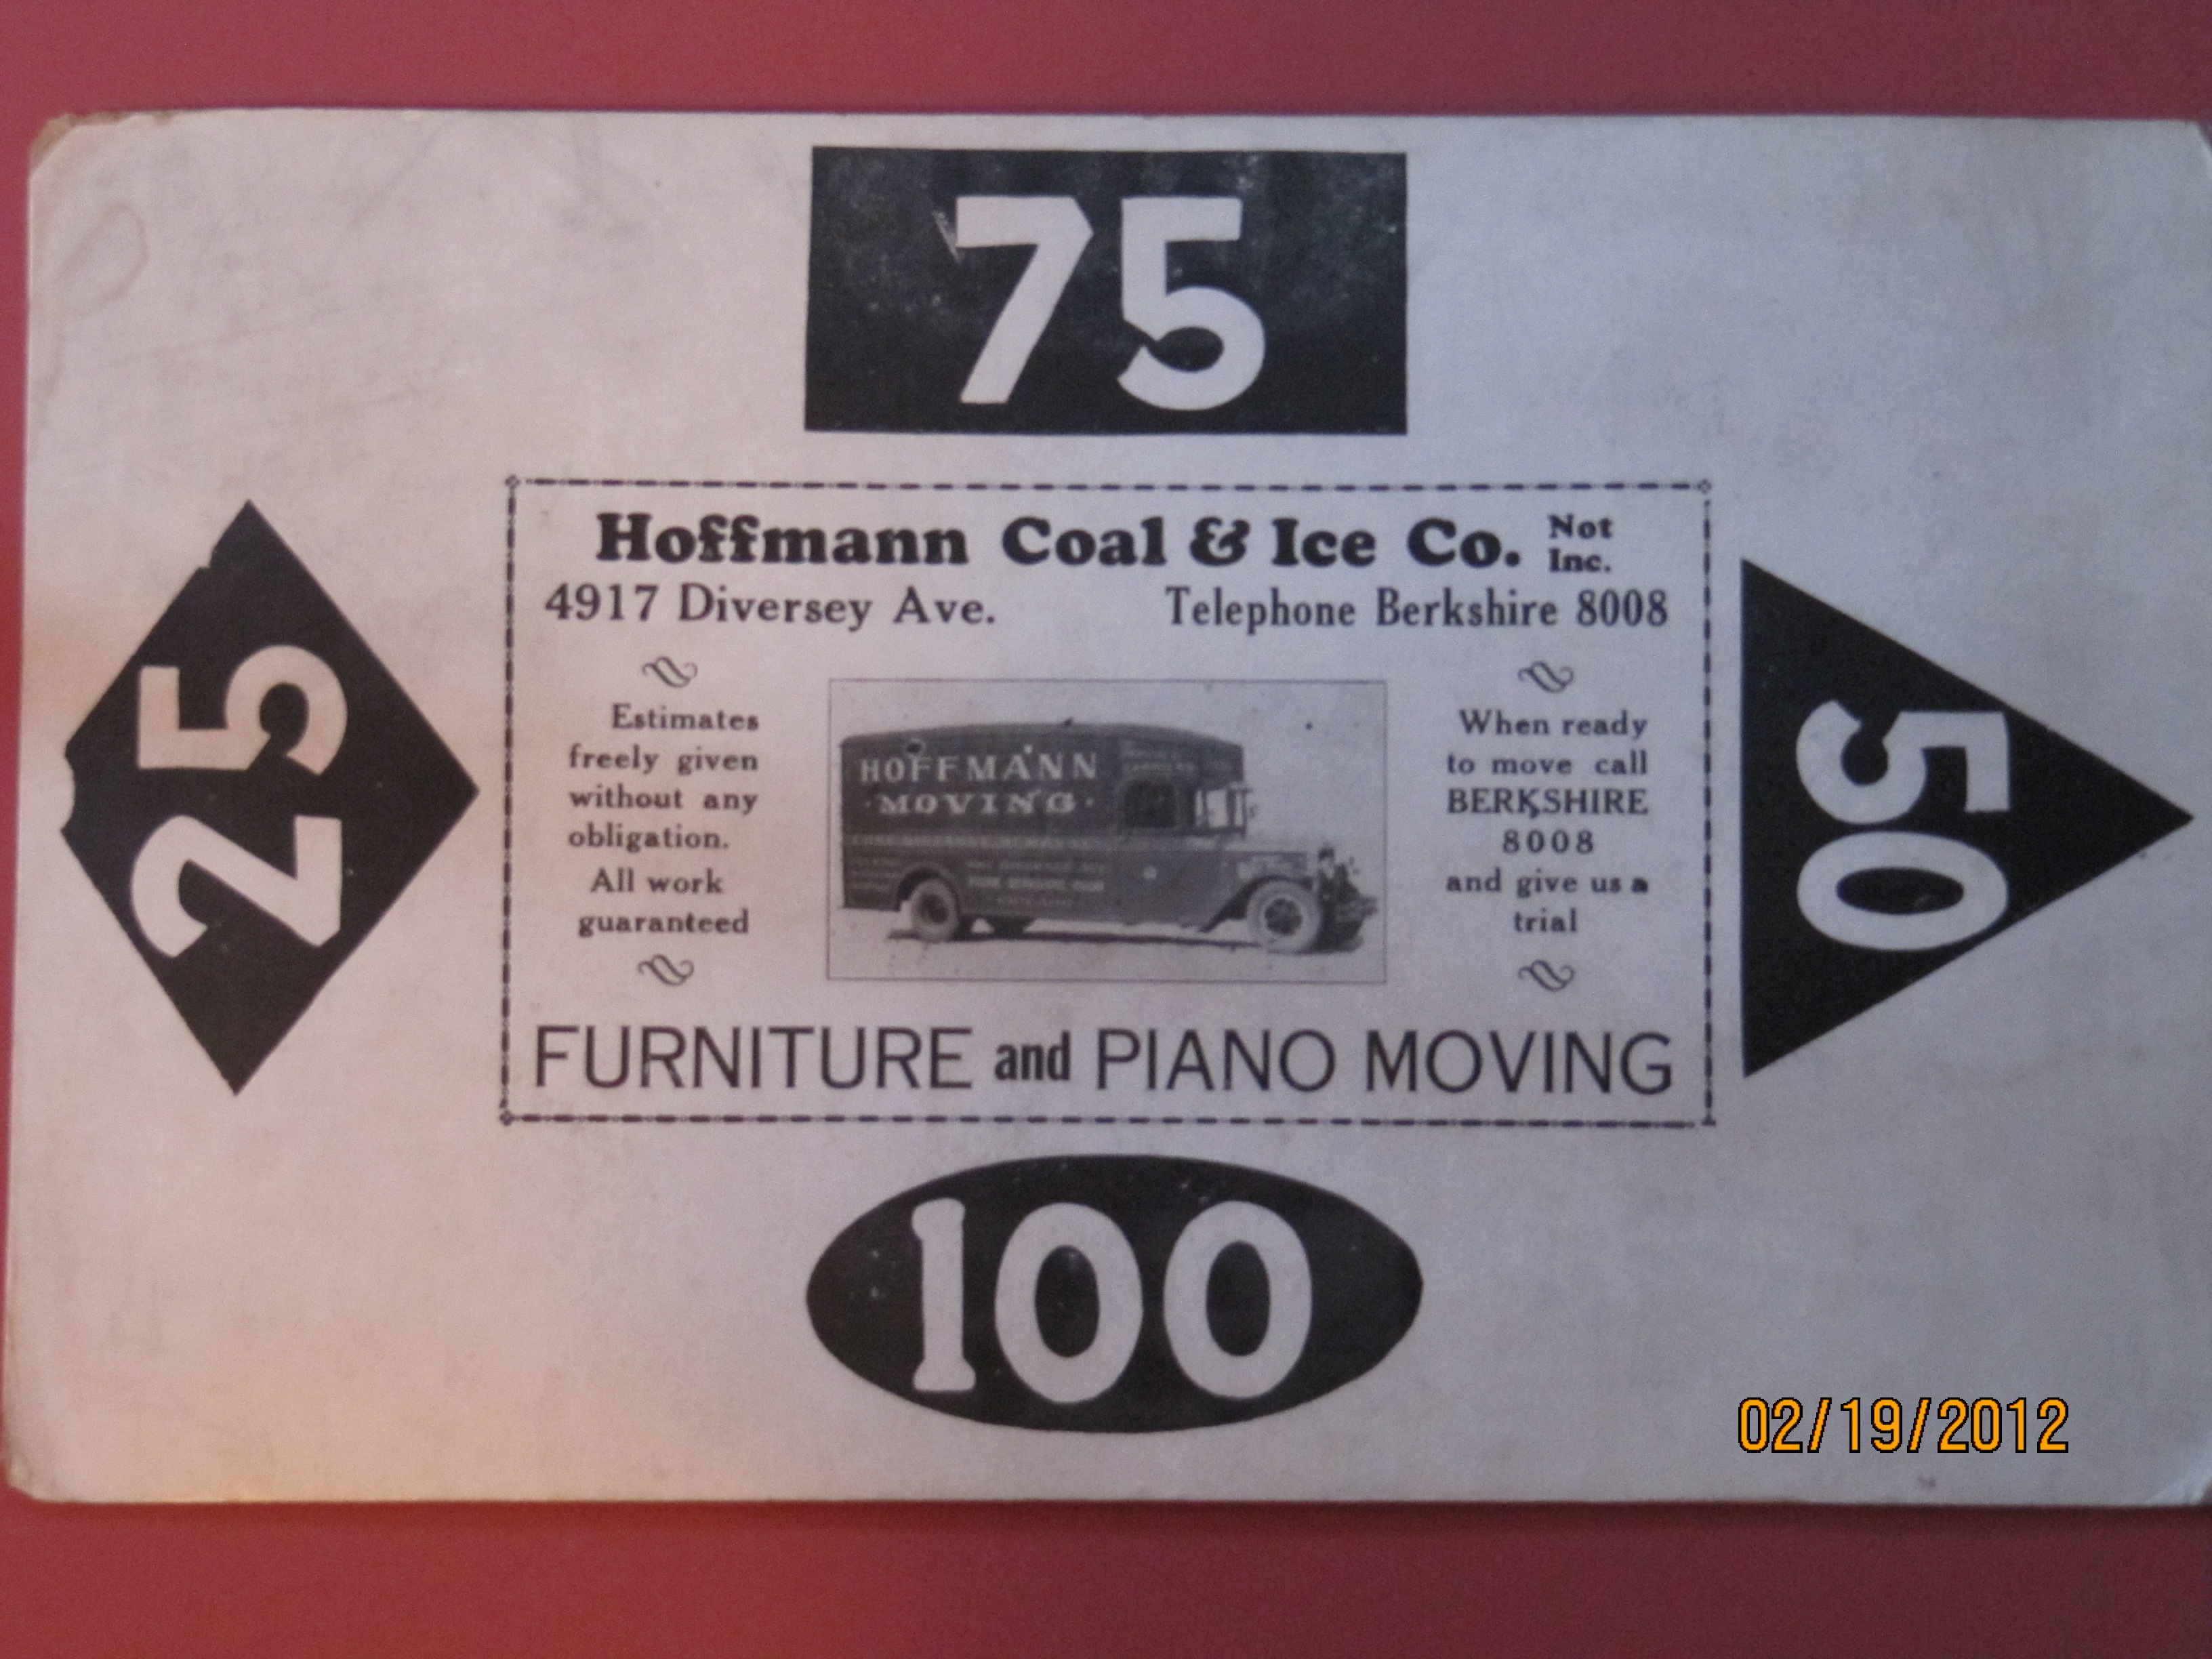 Hoffmann Coal & Ice Co.